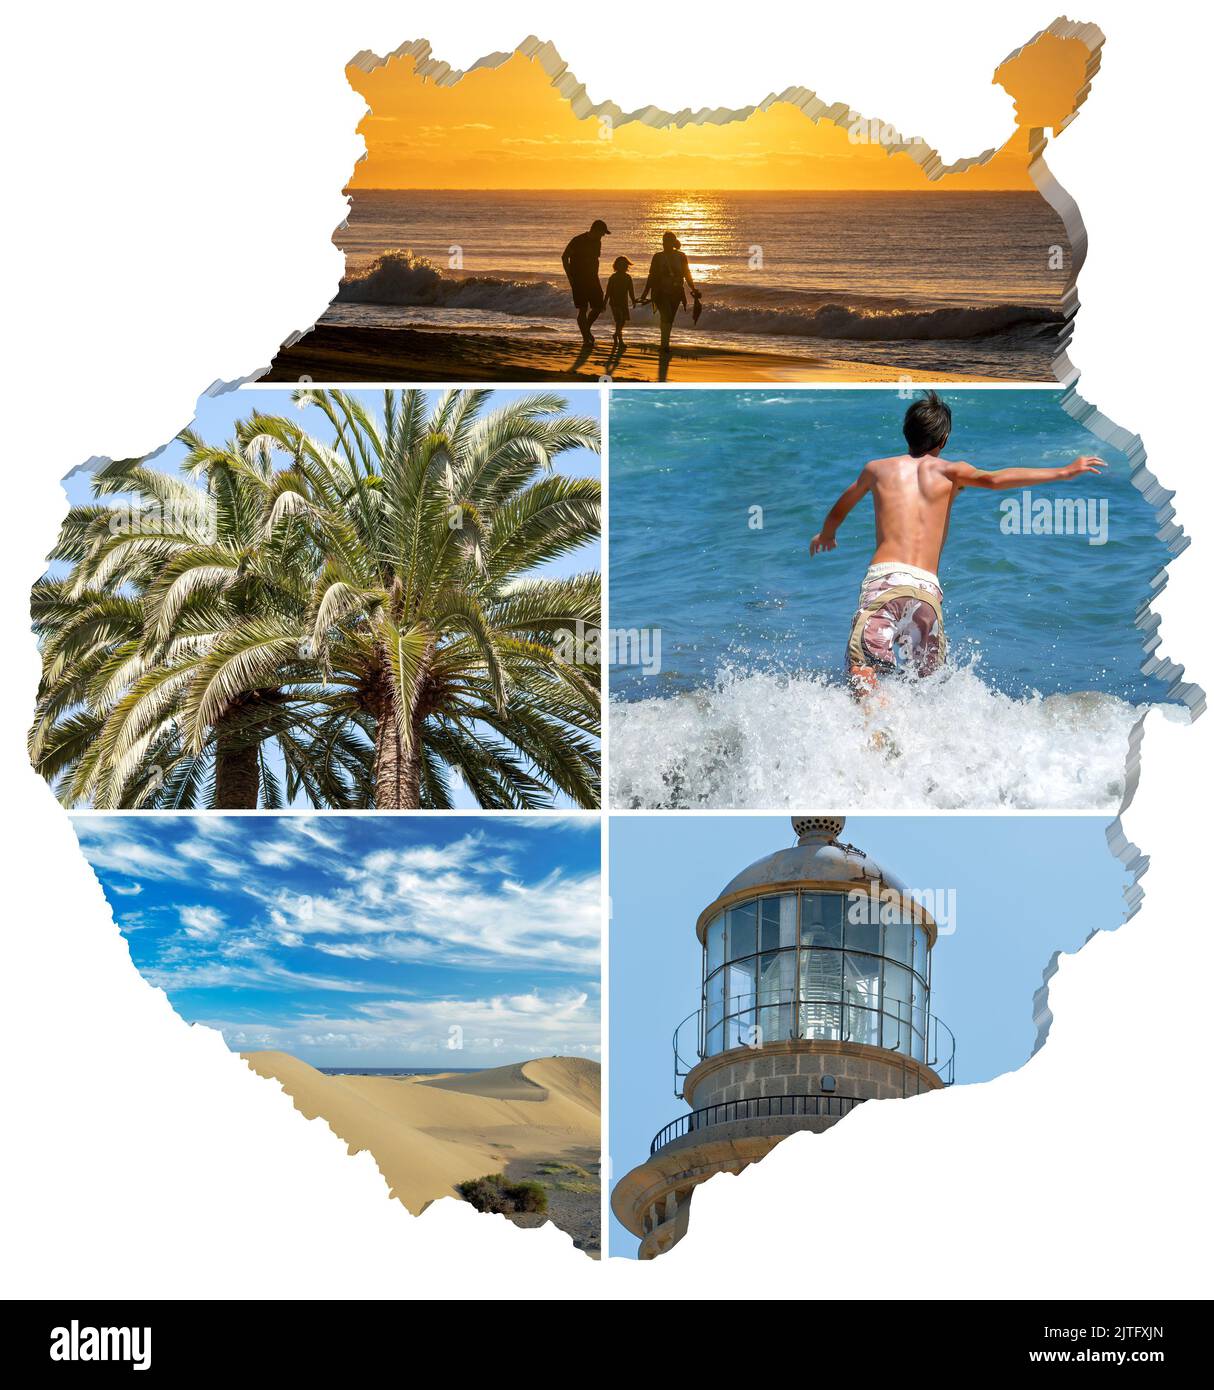 Collage de fotos de Gran Canaria en el mapa de Gran Canaria, fondo blanco. Foto de stock